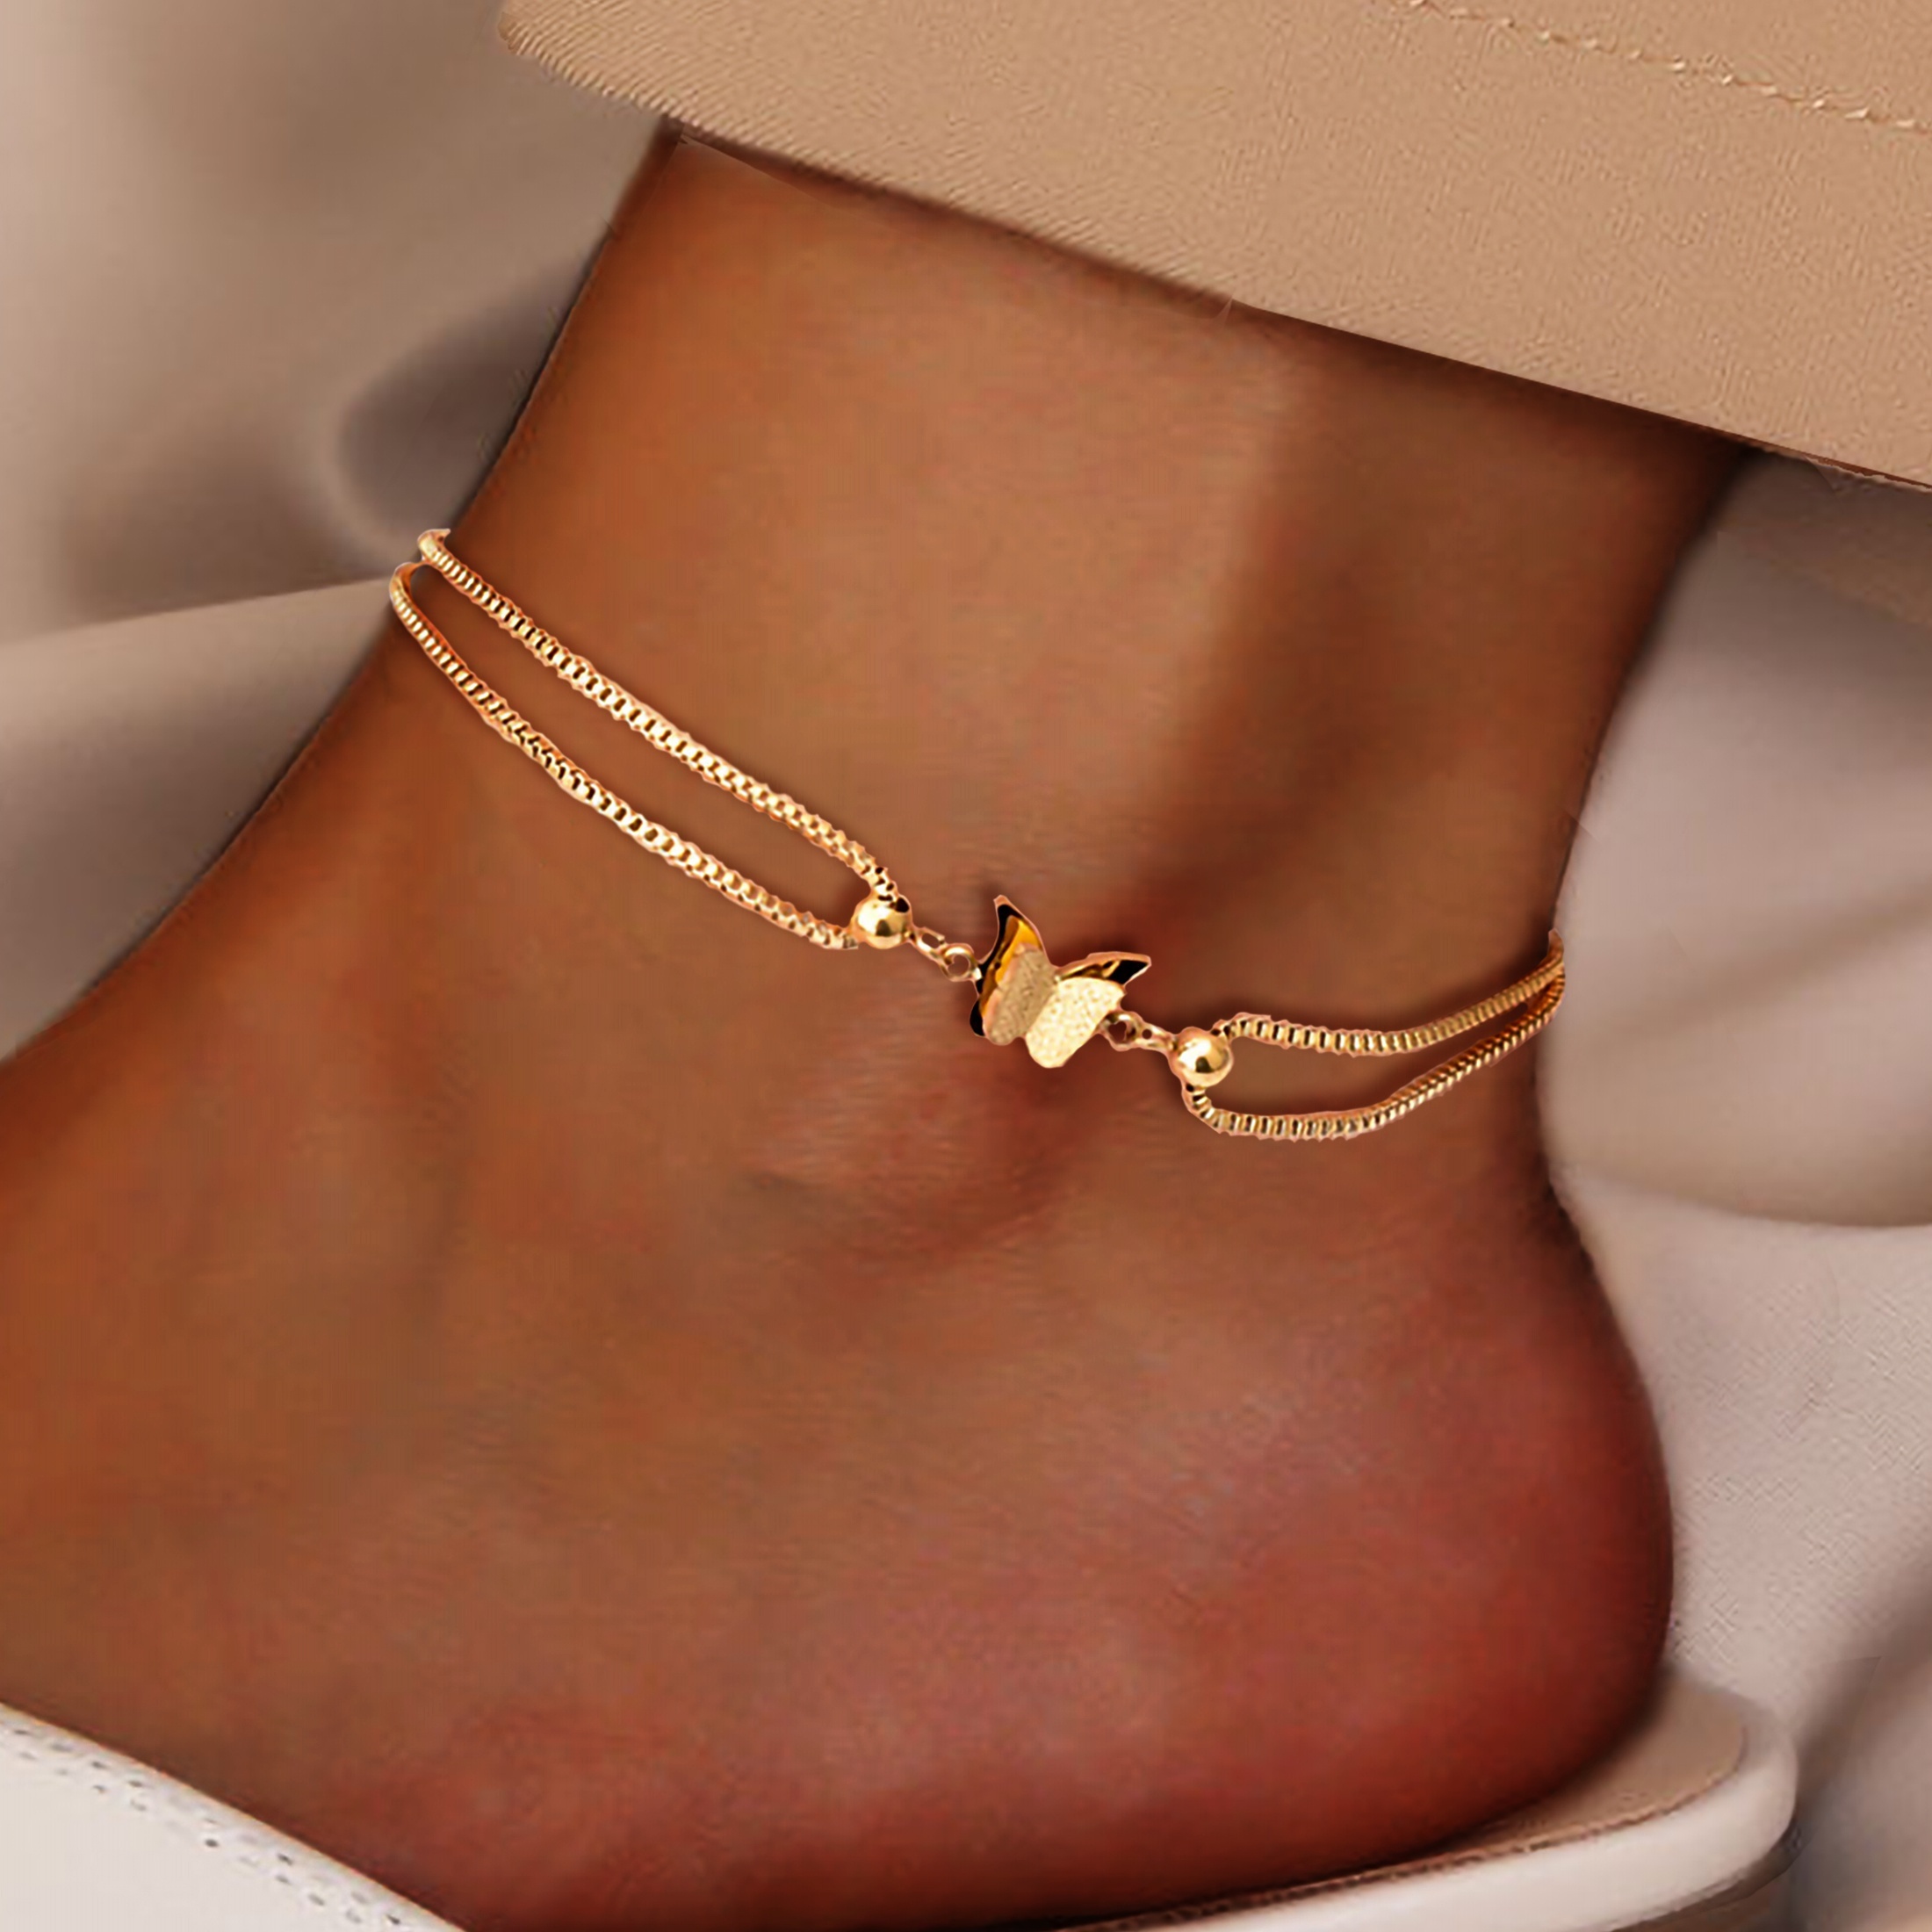 

1pc Butterfly Shape Beads Chain Anklet Waterproof Travel Street Beach Ankle Bracelet